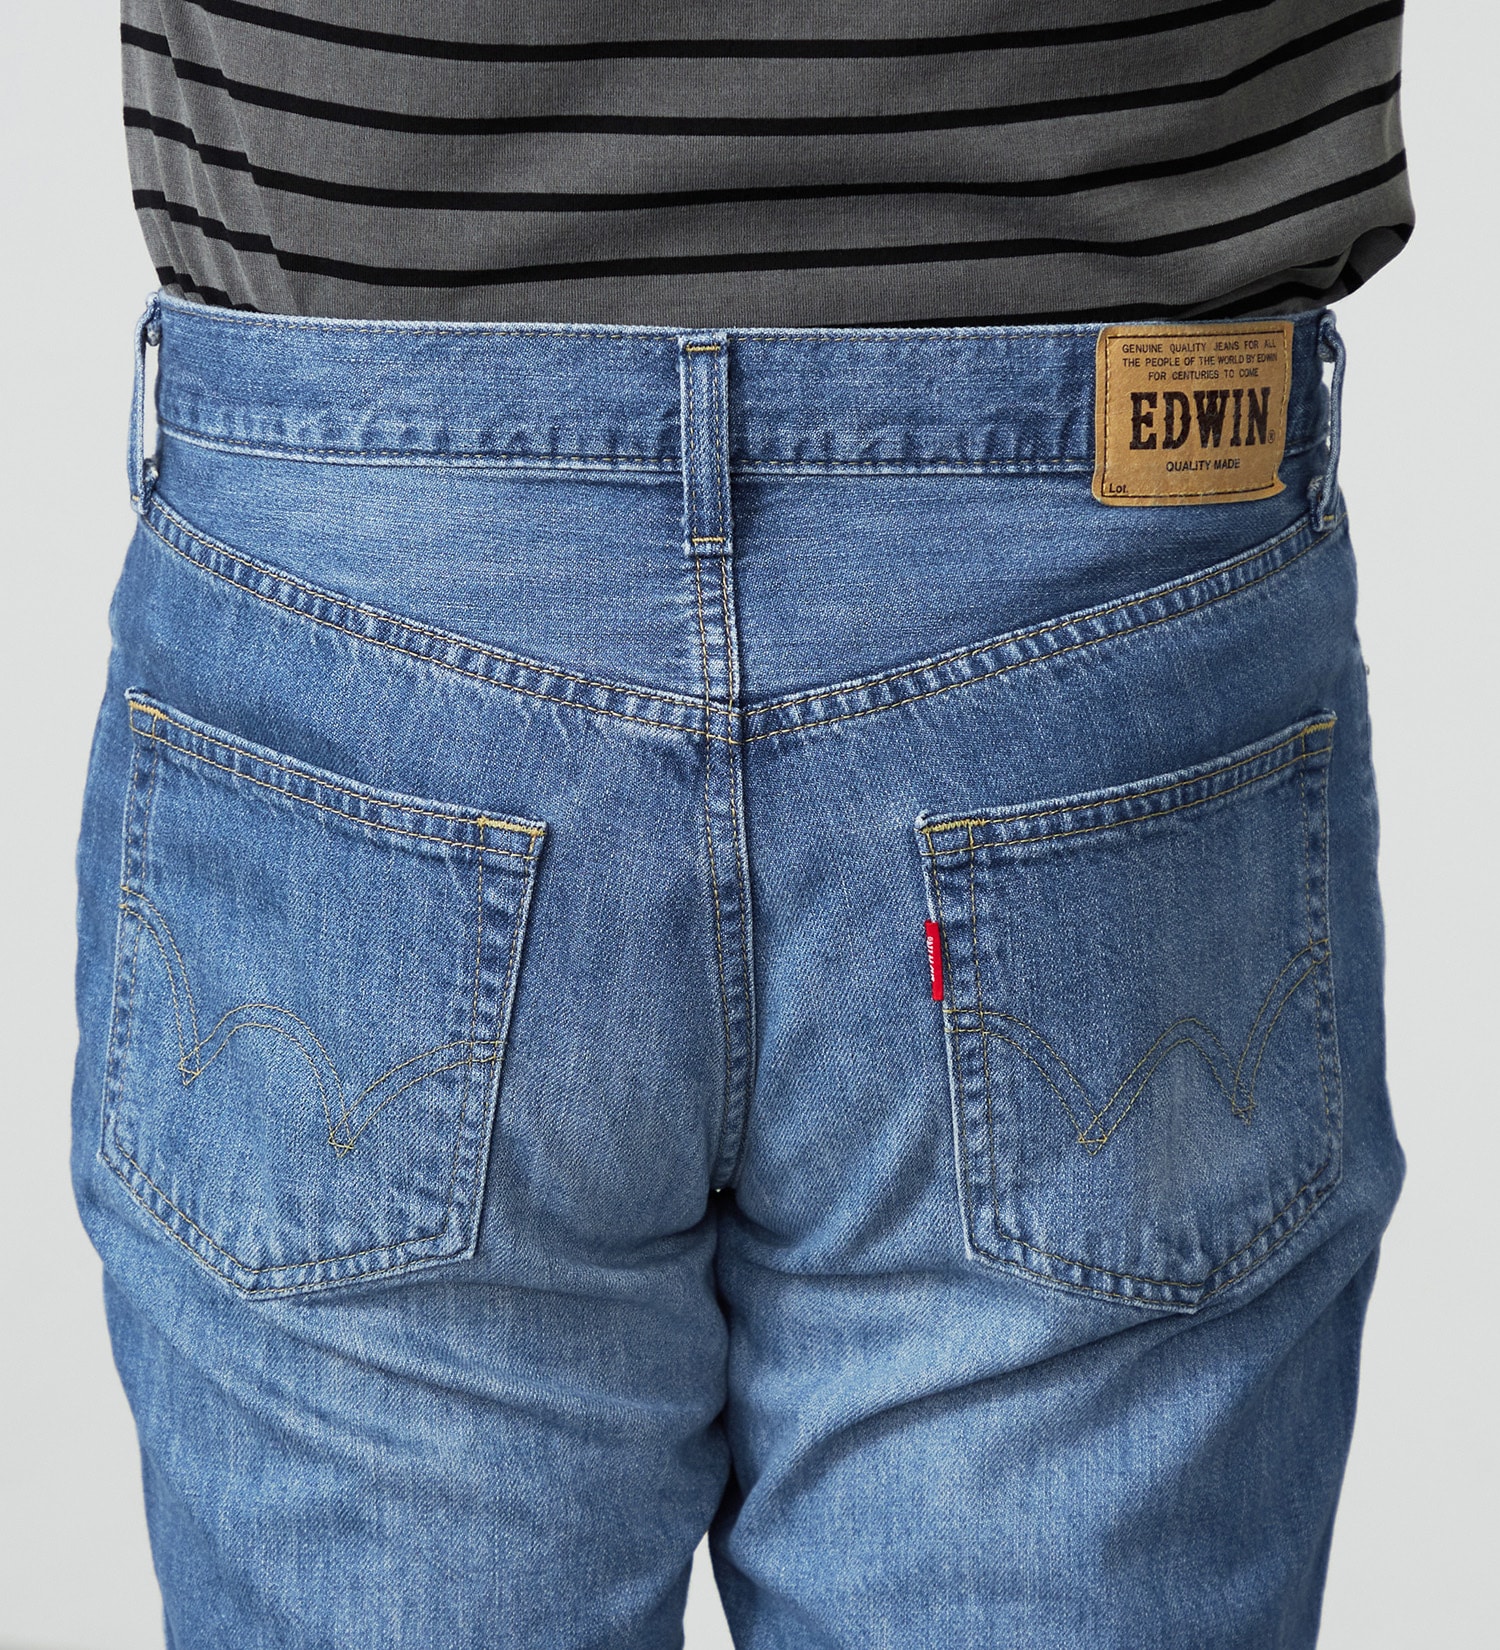 EDWIN(エドウイン)の【大きいサイズ】EDWIN BASIC クロップドデニムパンツ|パンツ/ショート丈/メンズ|中色ブルー